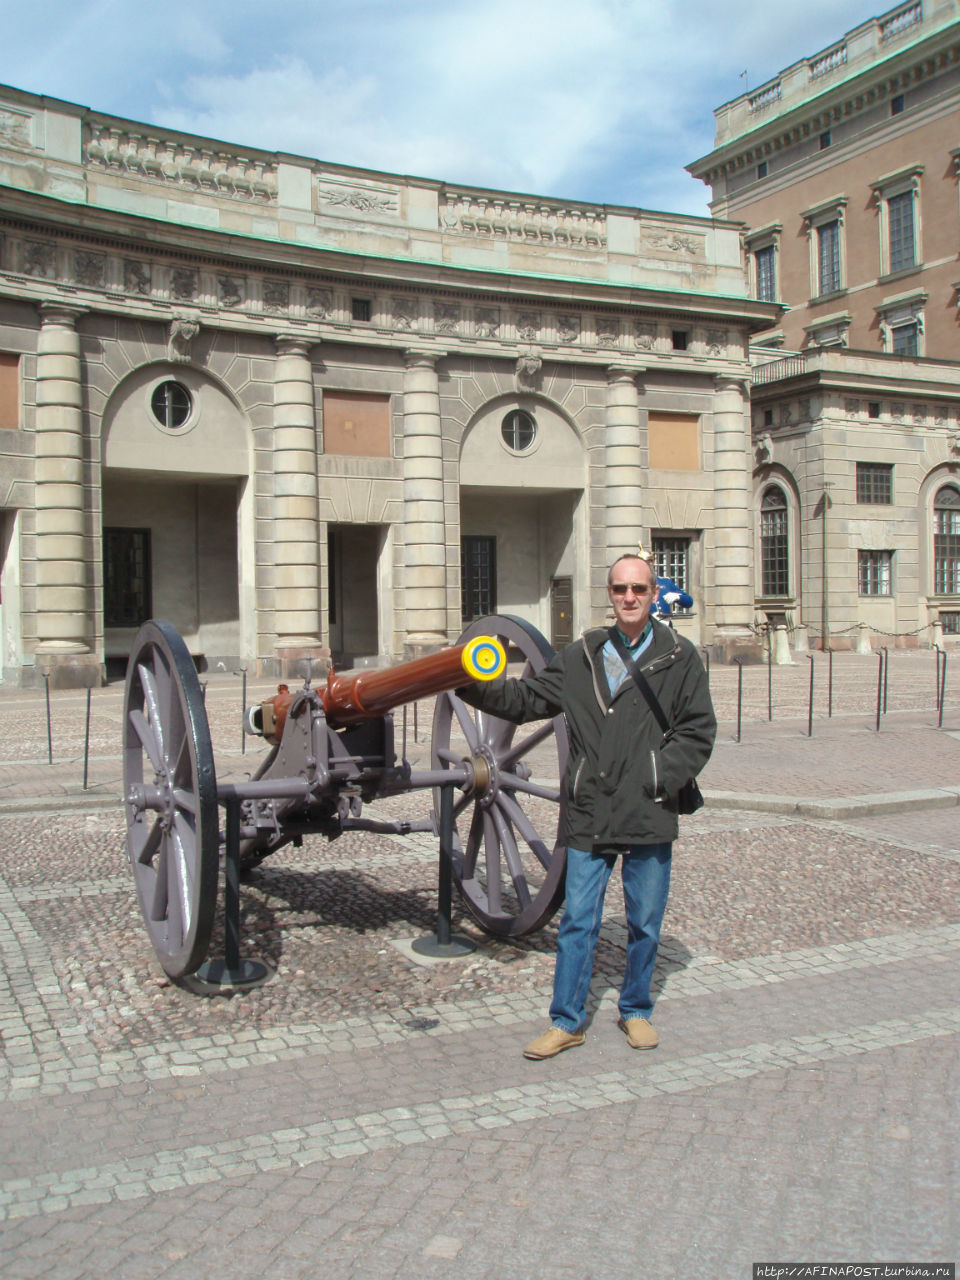 Стокгольм. Смена караула у Королевского дворца Стокгольм, Швеция